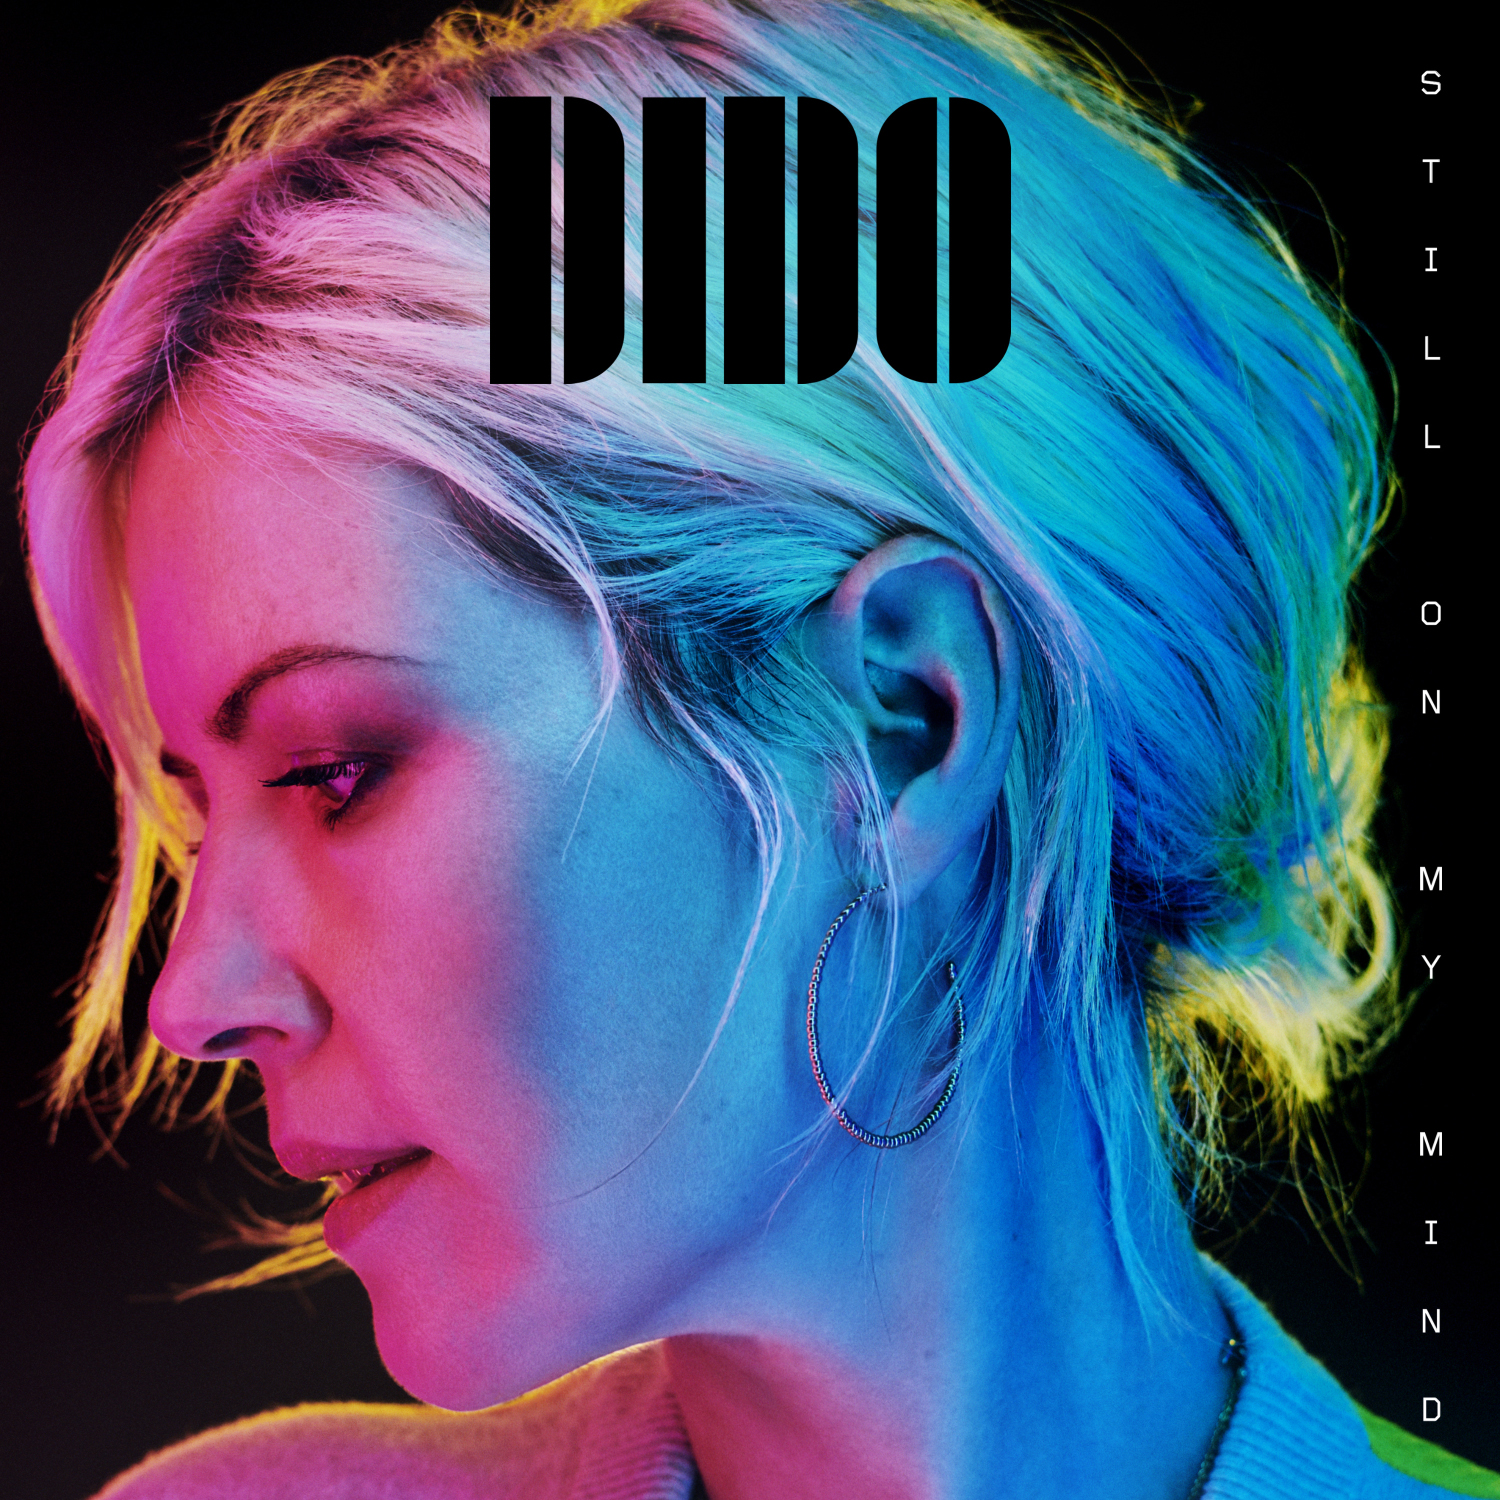 Albumcover "Still On My Mind" von Dido